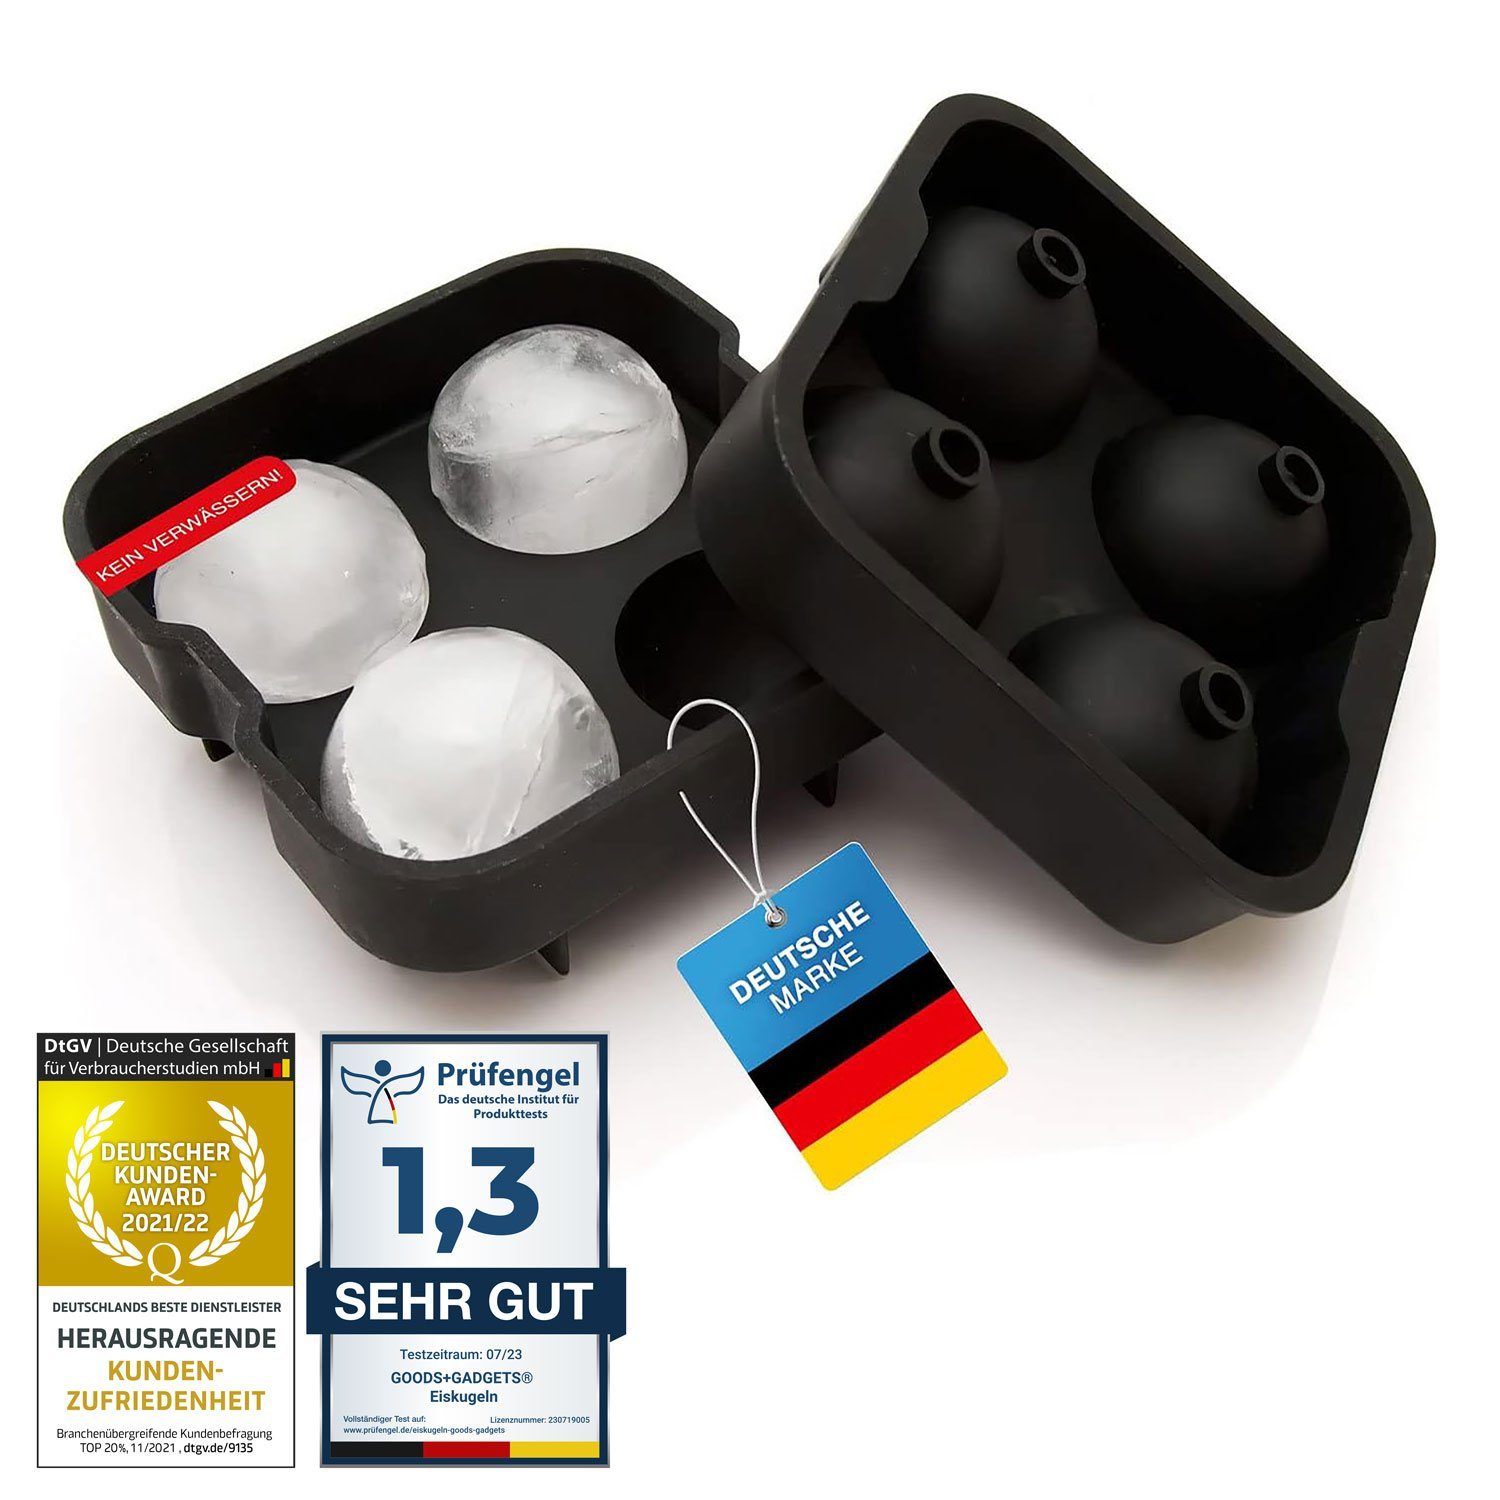 Goods+Gadgets Eiswürfelform Silikon Eiswürfelschale, Eis-Würfel-Maker (XXL Eiskugeln),